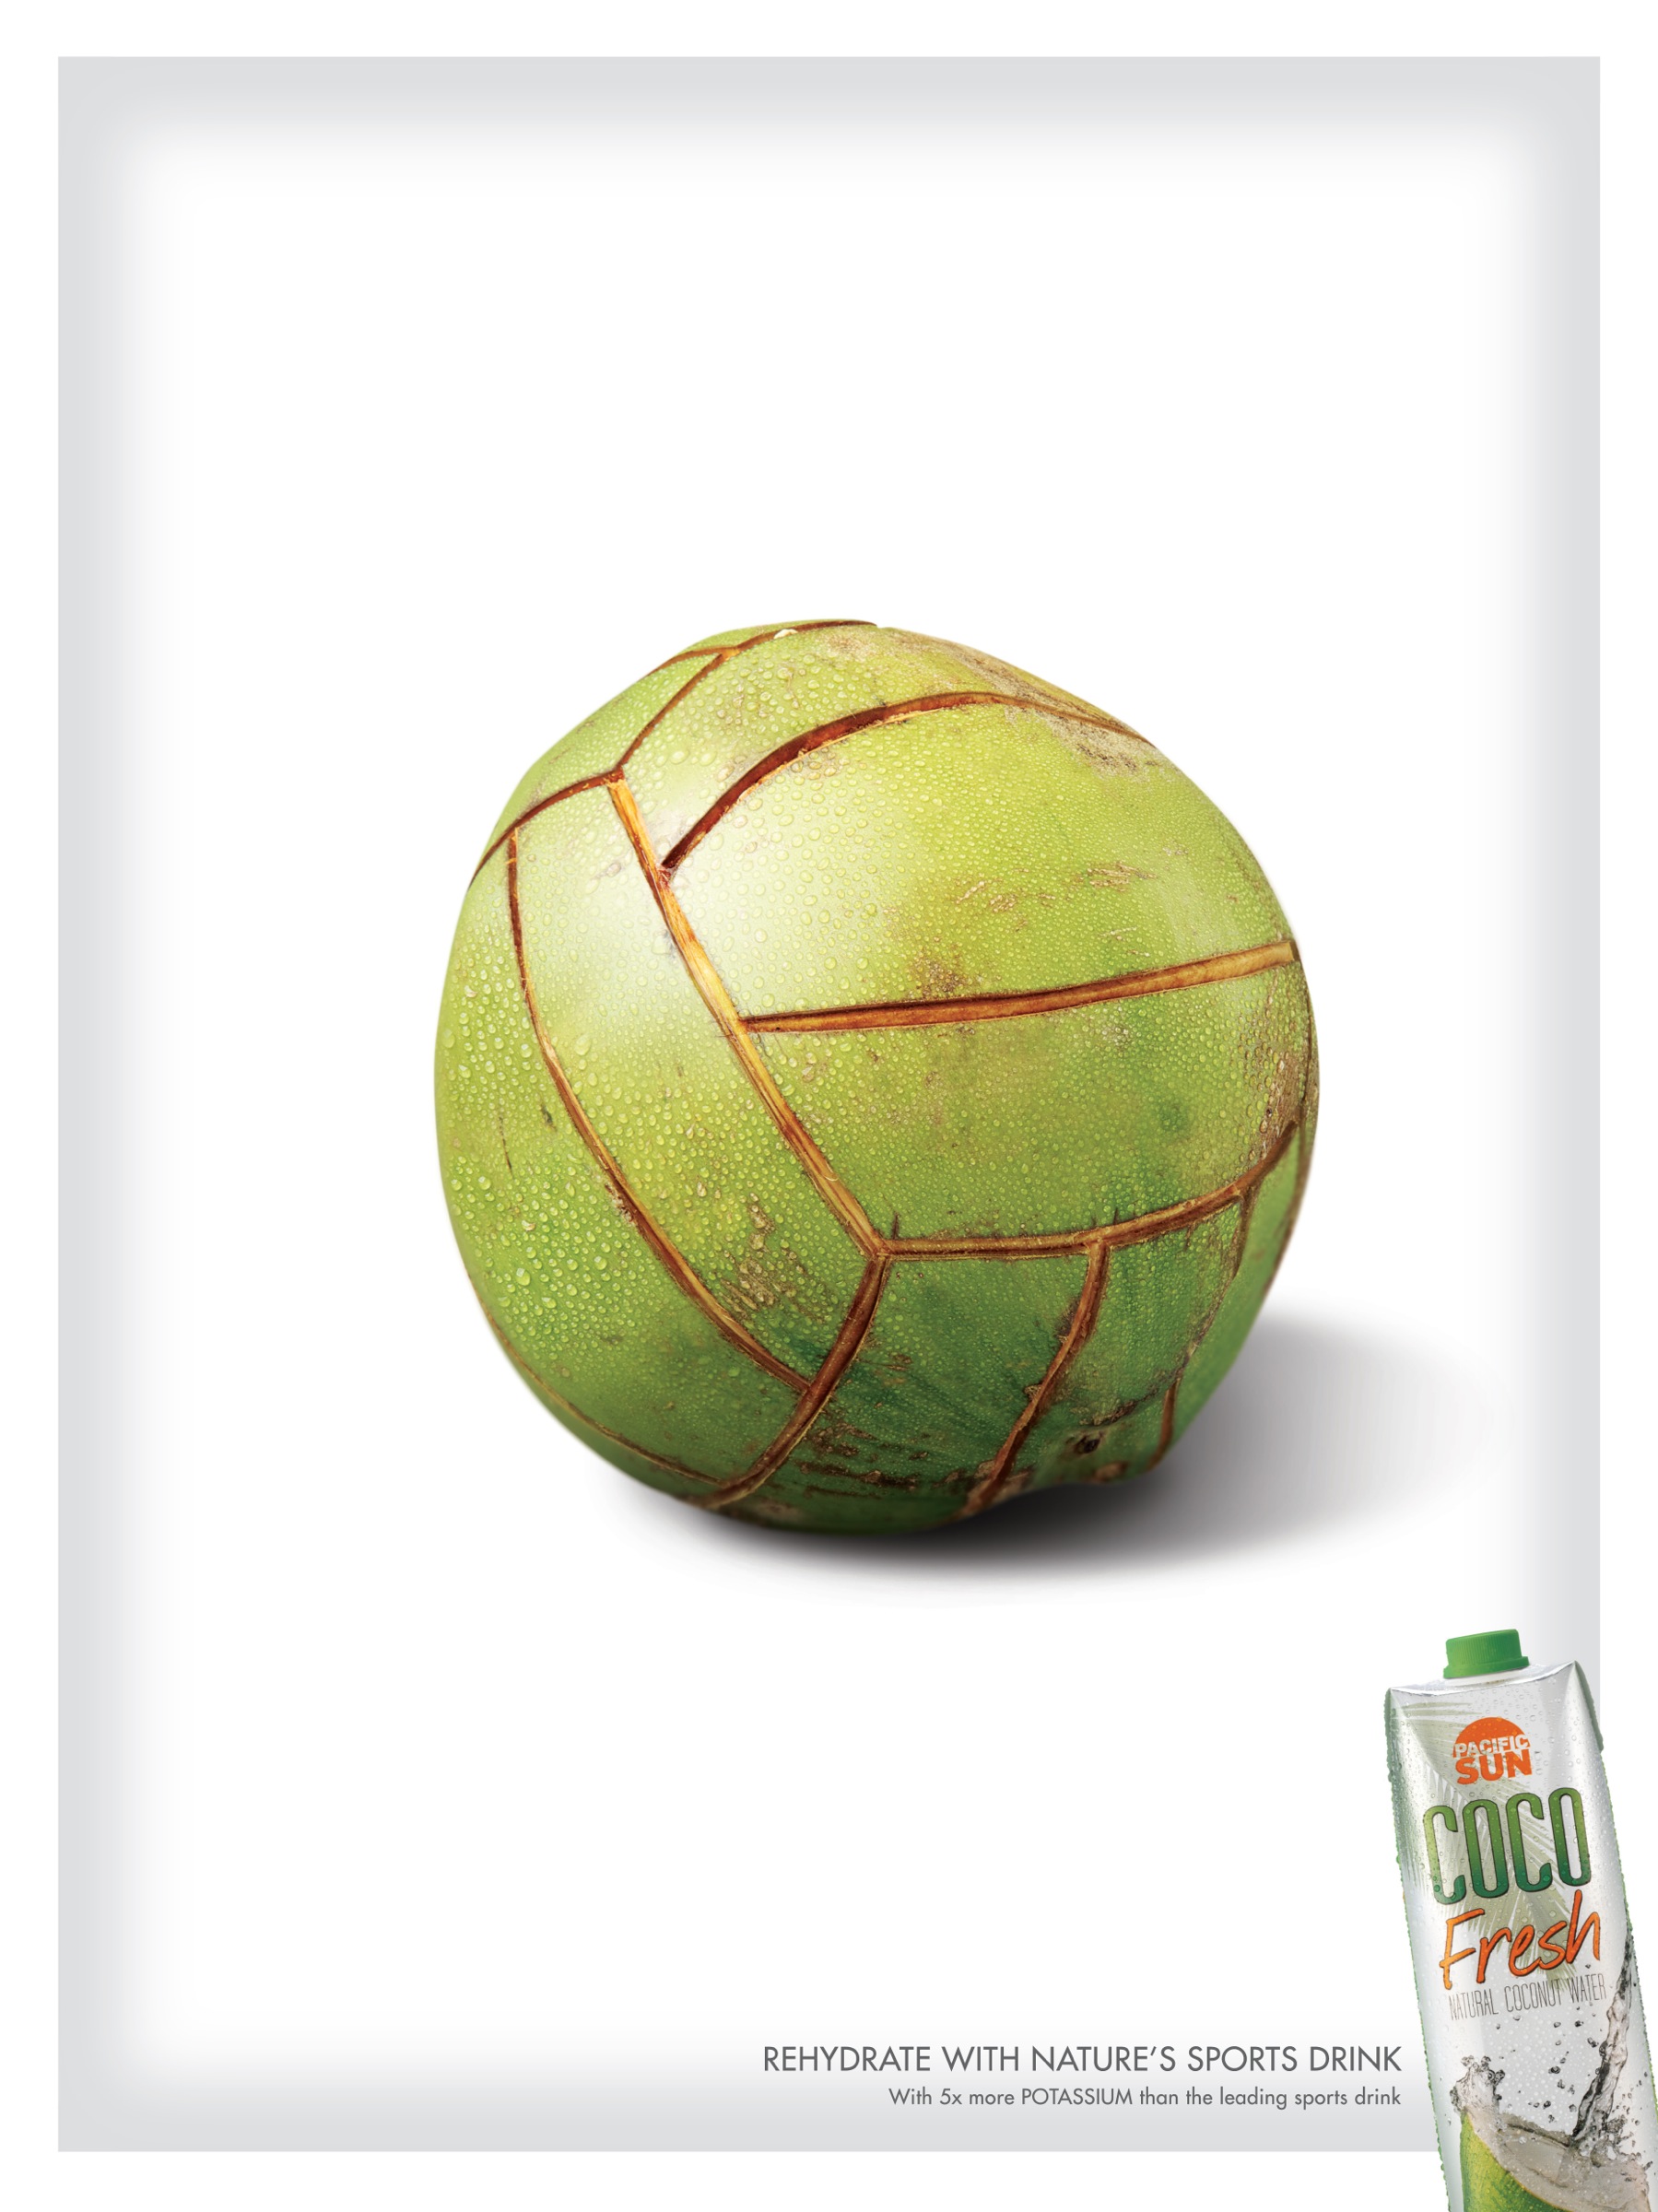 菲律宾Coco Fresh饮料平面广告设计